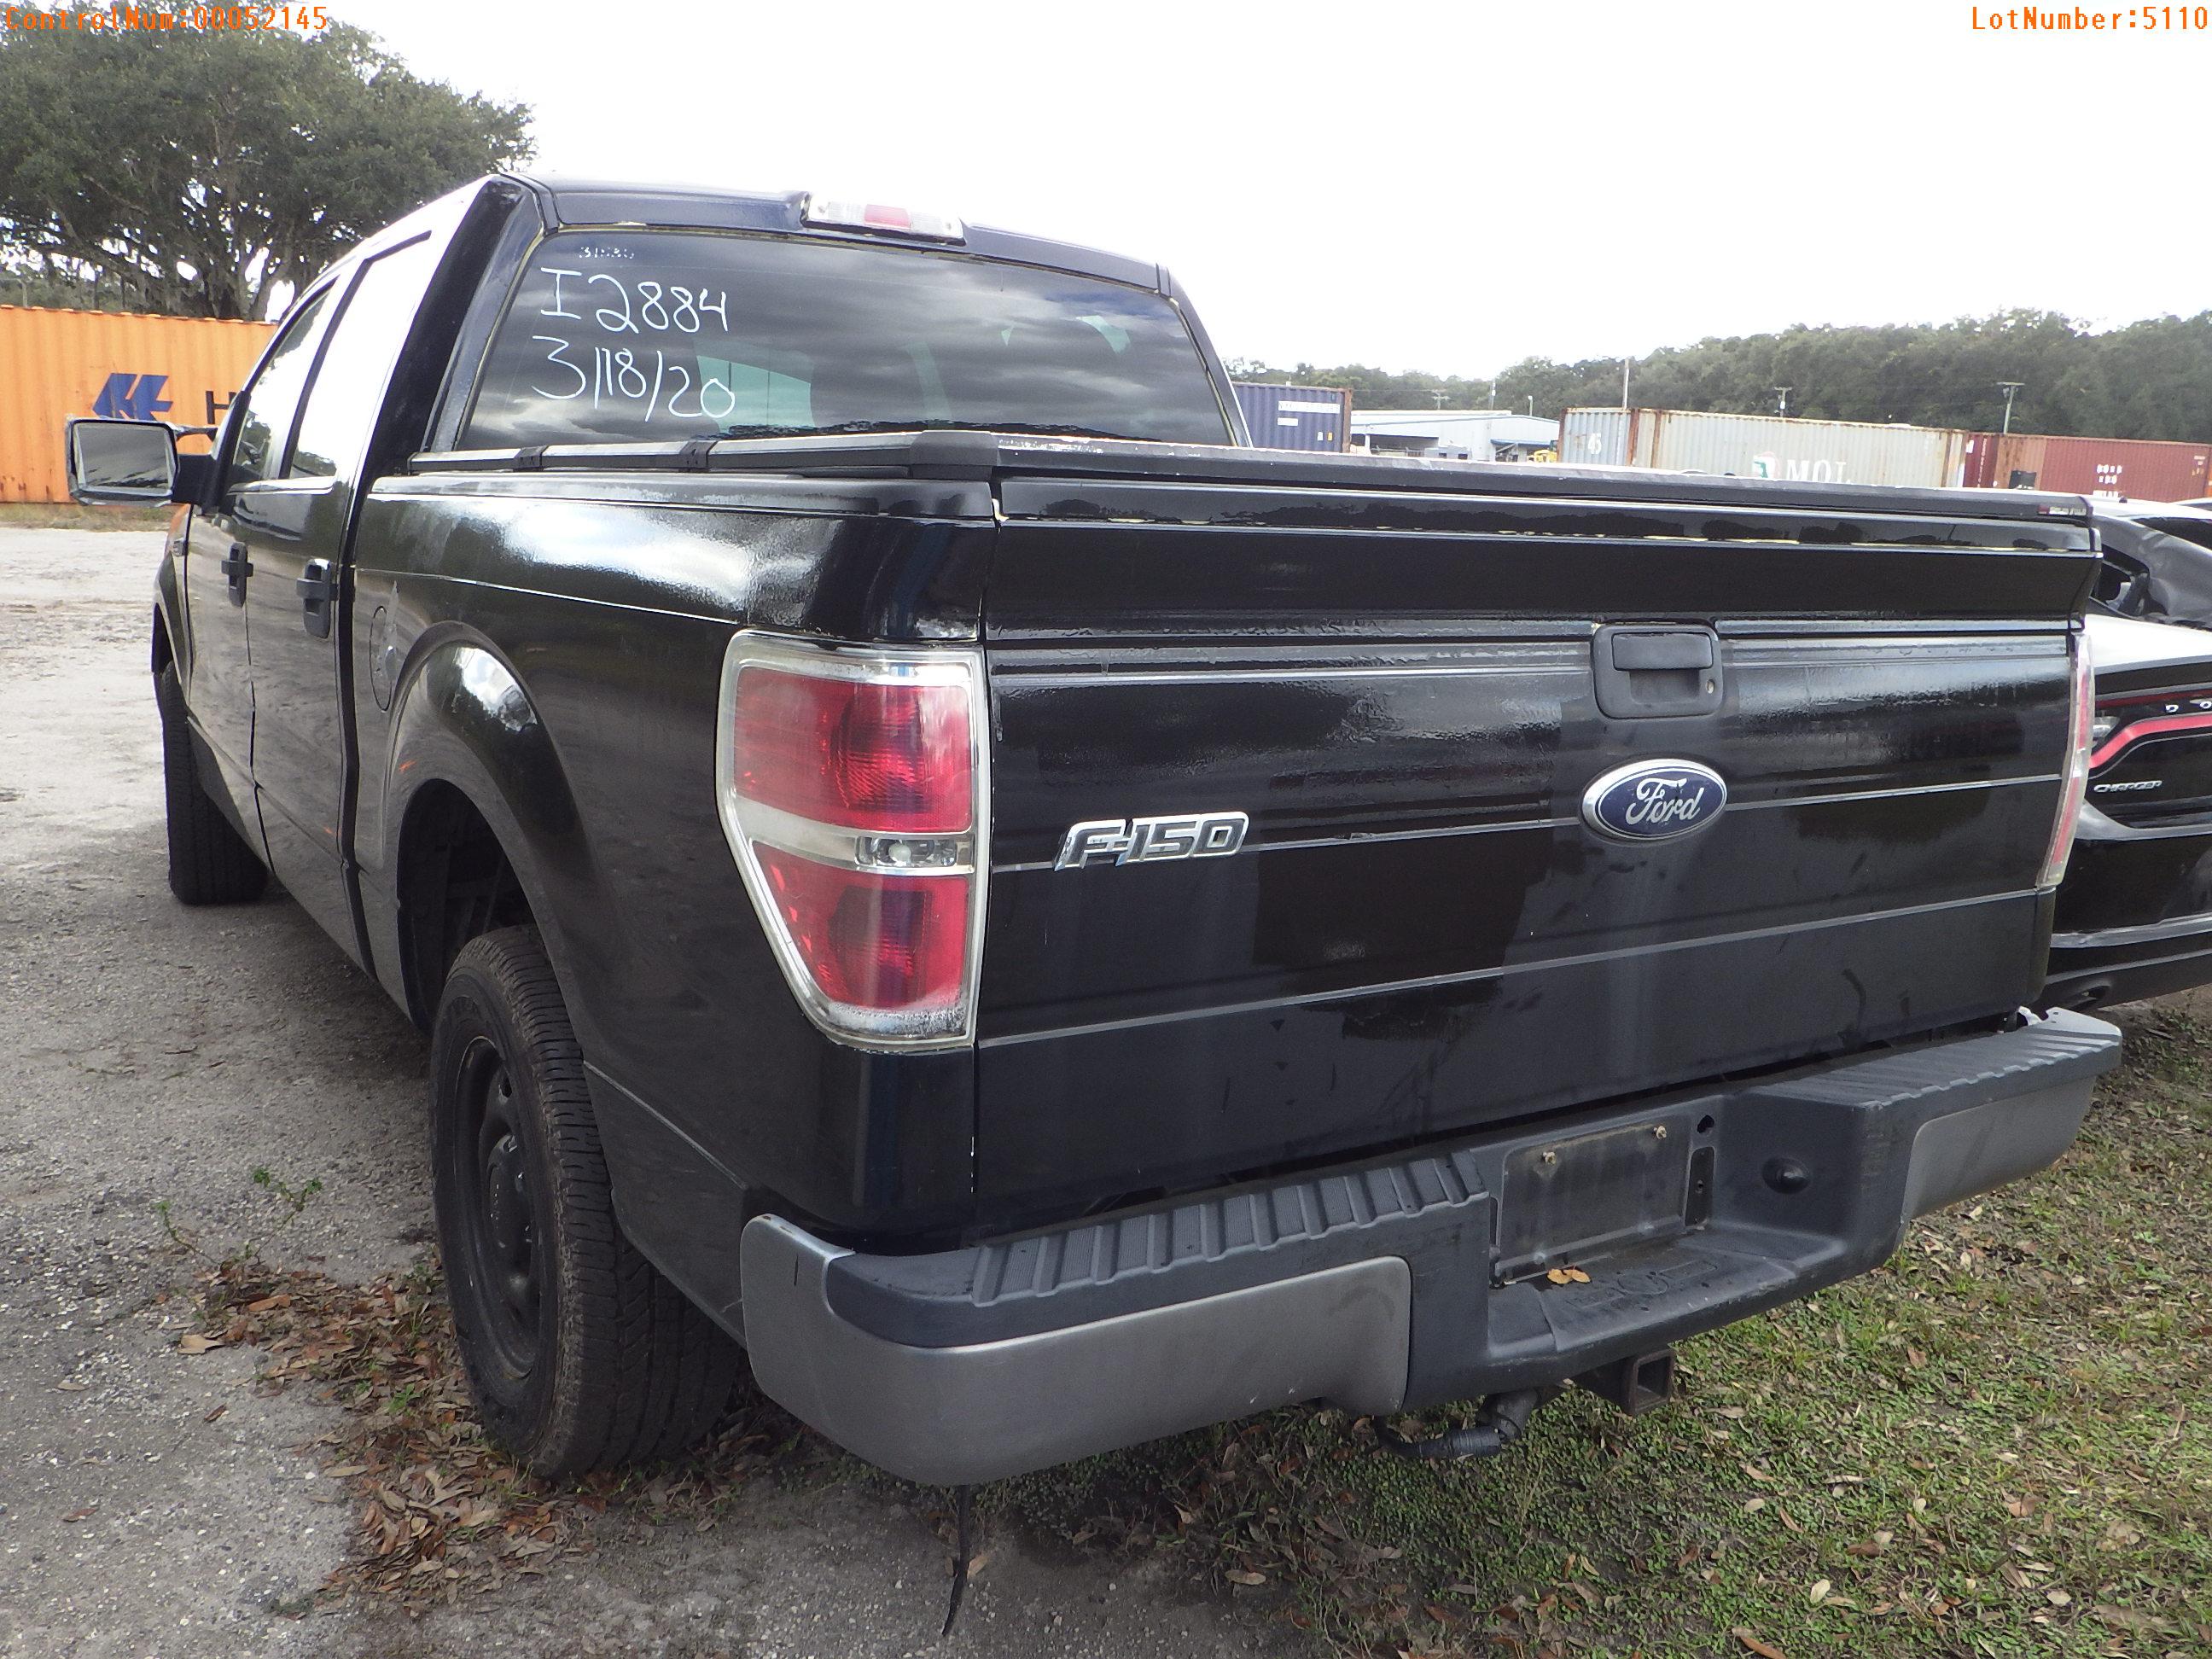 1-05110 (Trucks-Pickup 4D)  Seller: Florida State C.V.E. F.H.P. 2010 FORD F150